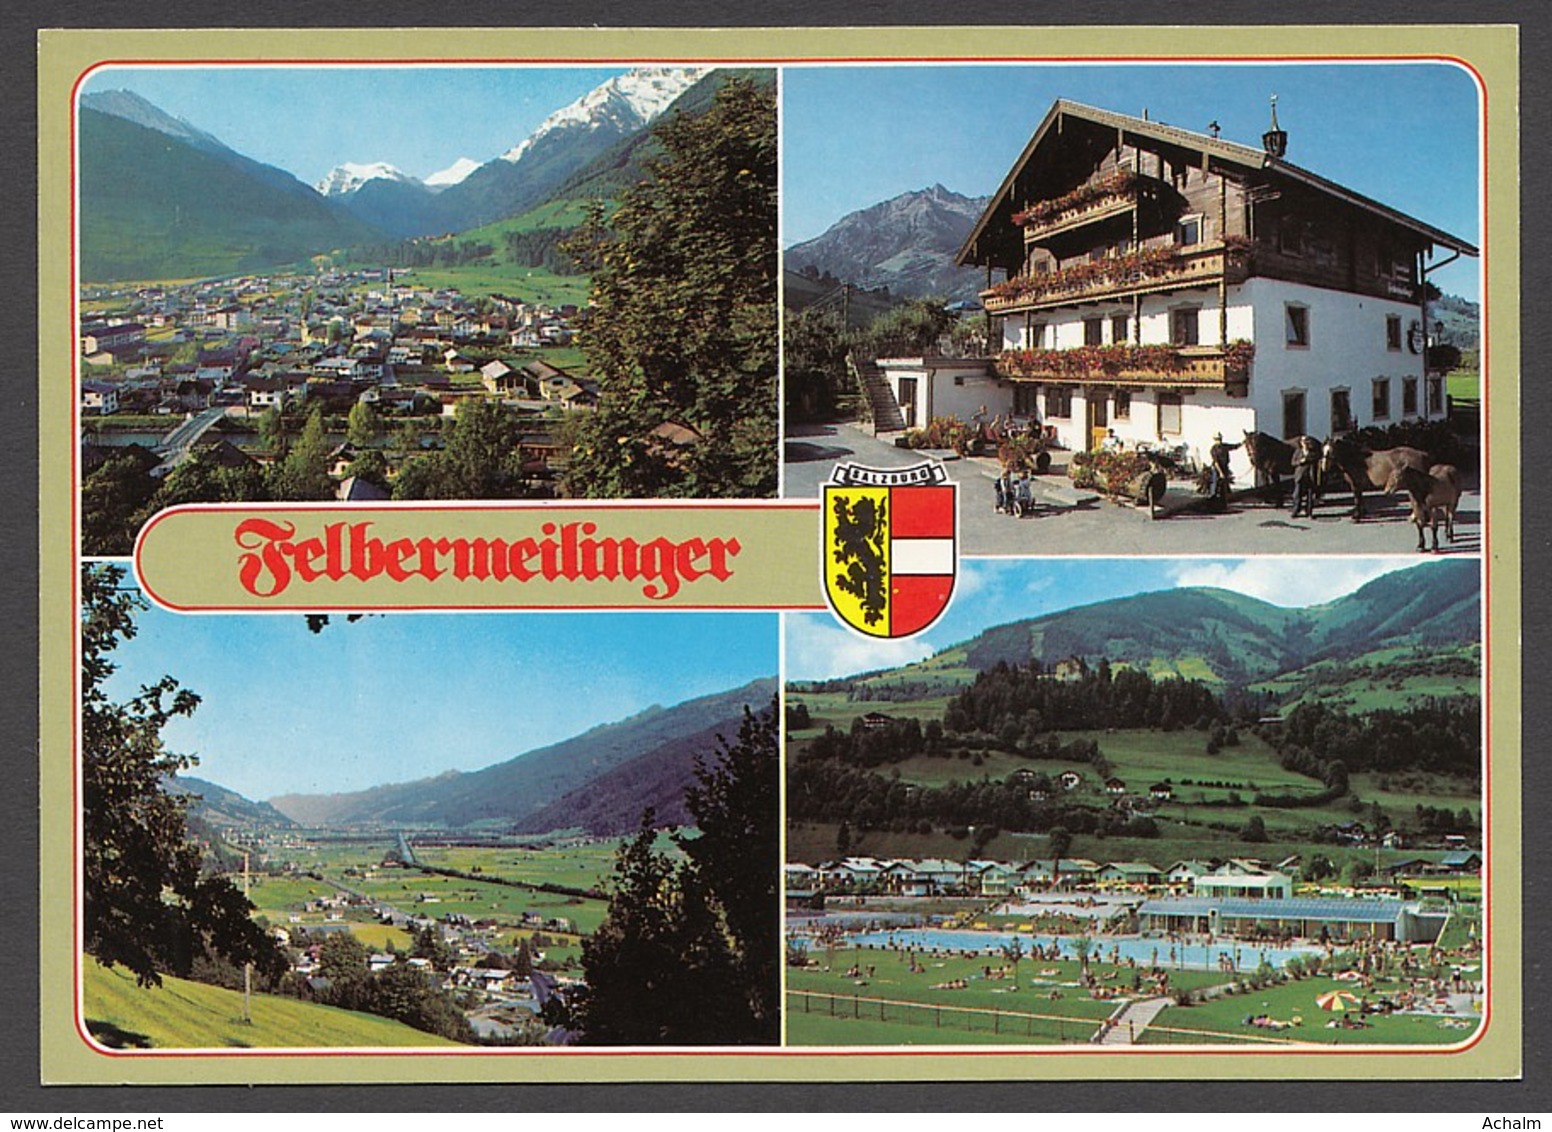 Mittersill Im Oberpinzgau - Gasthof Felbermeilinger - 4 Asichten - Mittersill